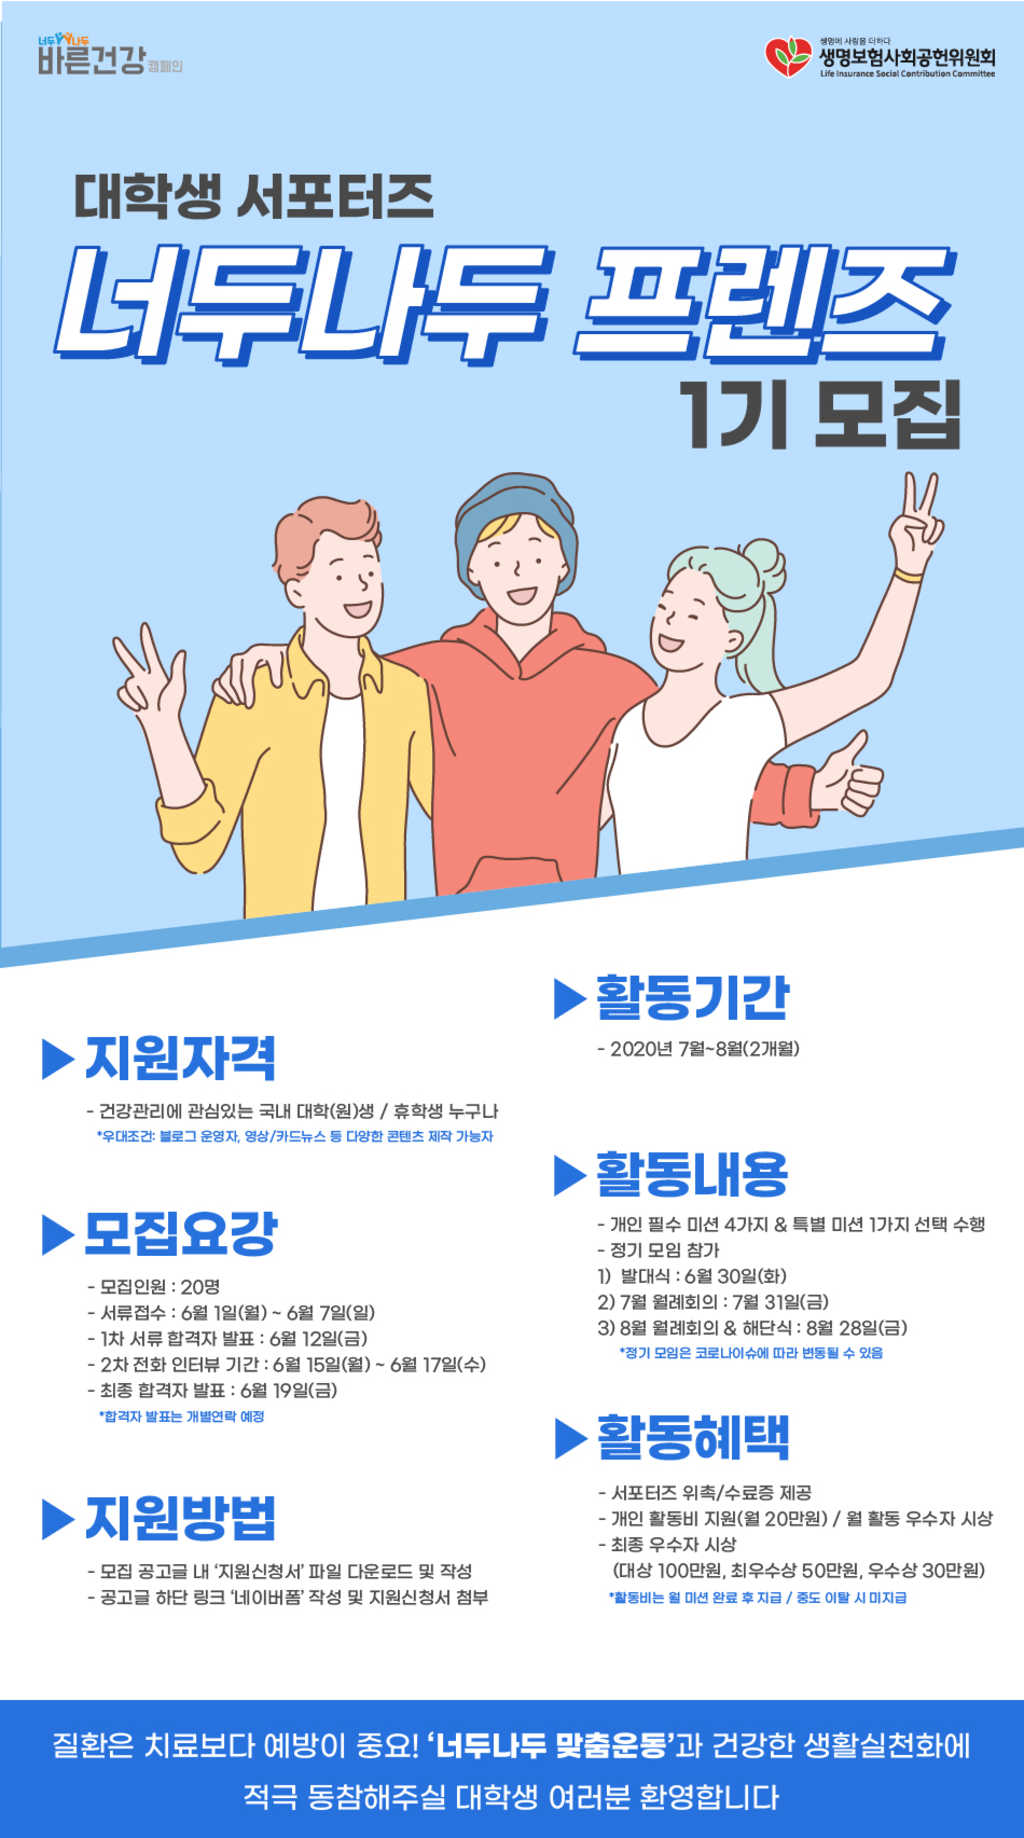 [바른건강 캠페인] 대학생 서포터즈 “너두나두 프렌즈”1기 모집